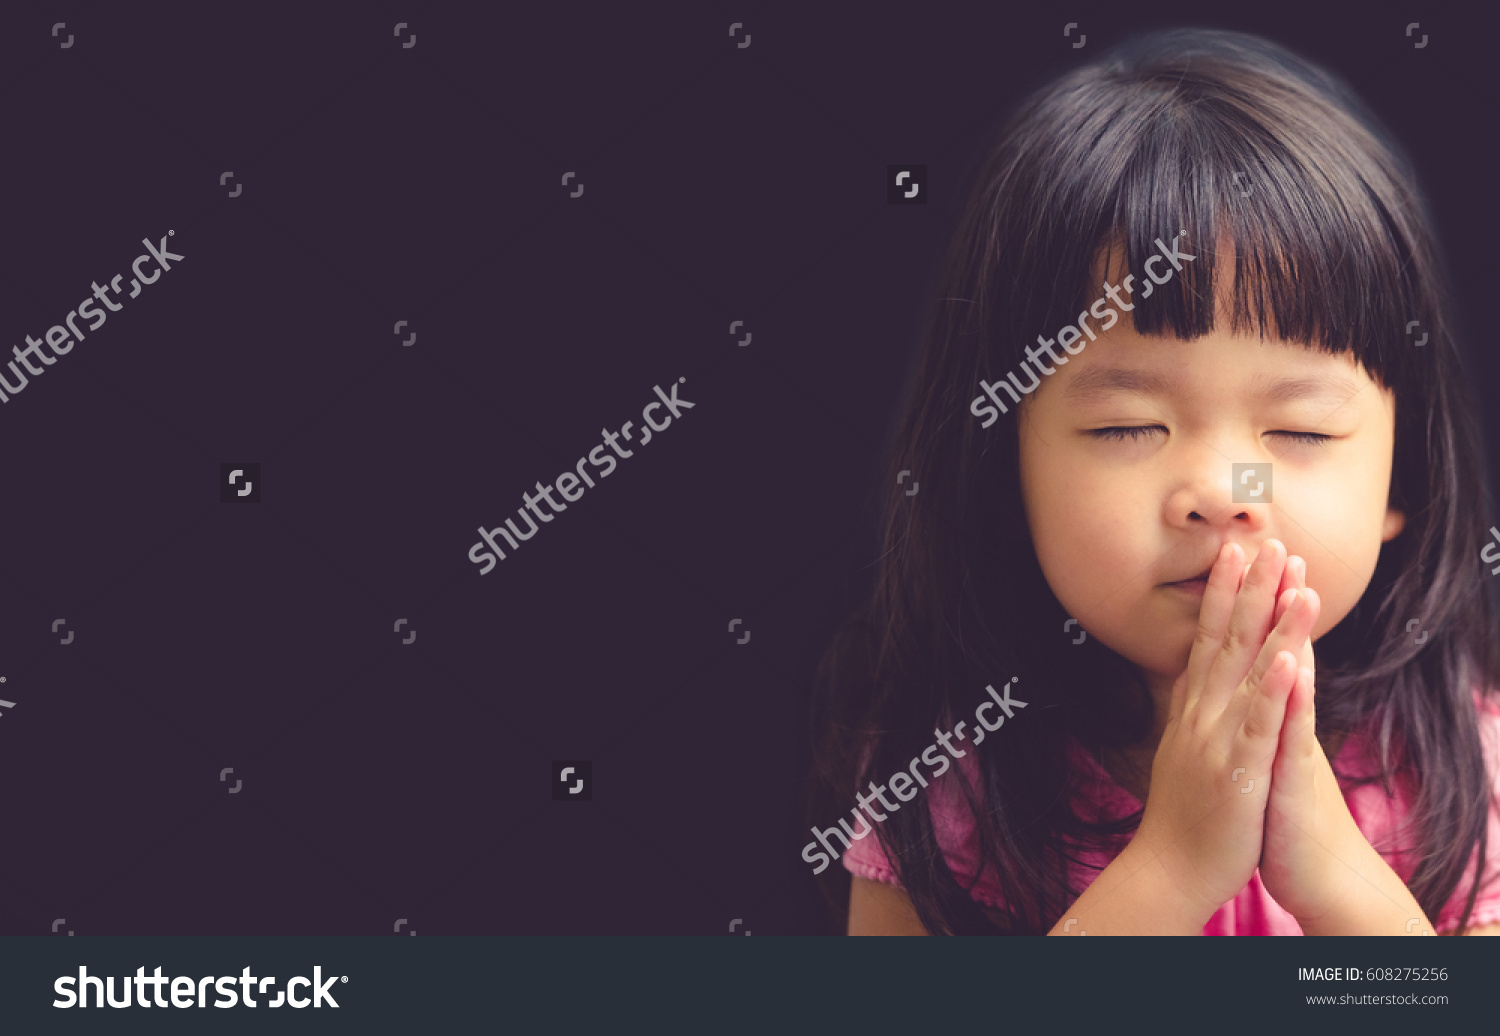 stock-photo-little-girl-praying-in-the-morning-little-asian-girl-hand-praying-hands-folded-in-prayer-concept-608275256 (1).jpg